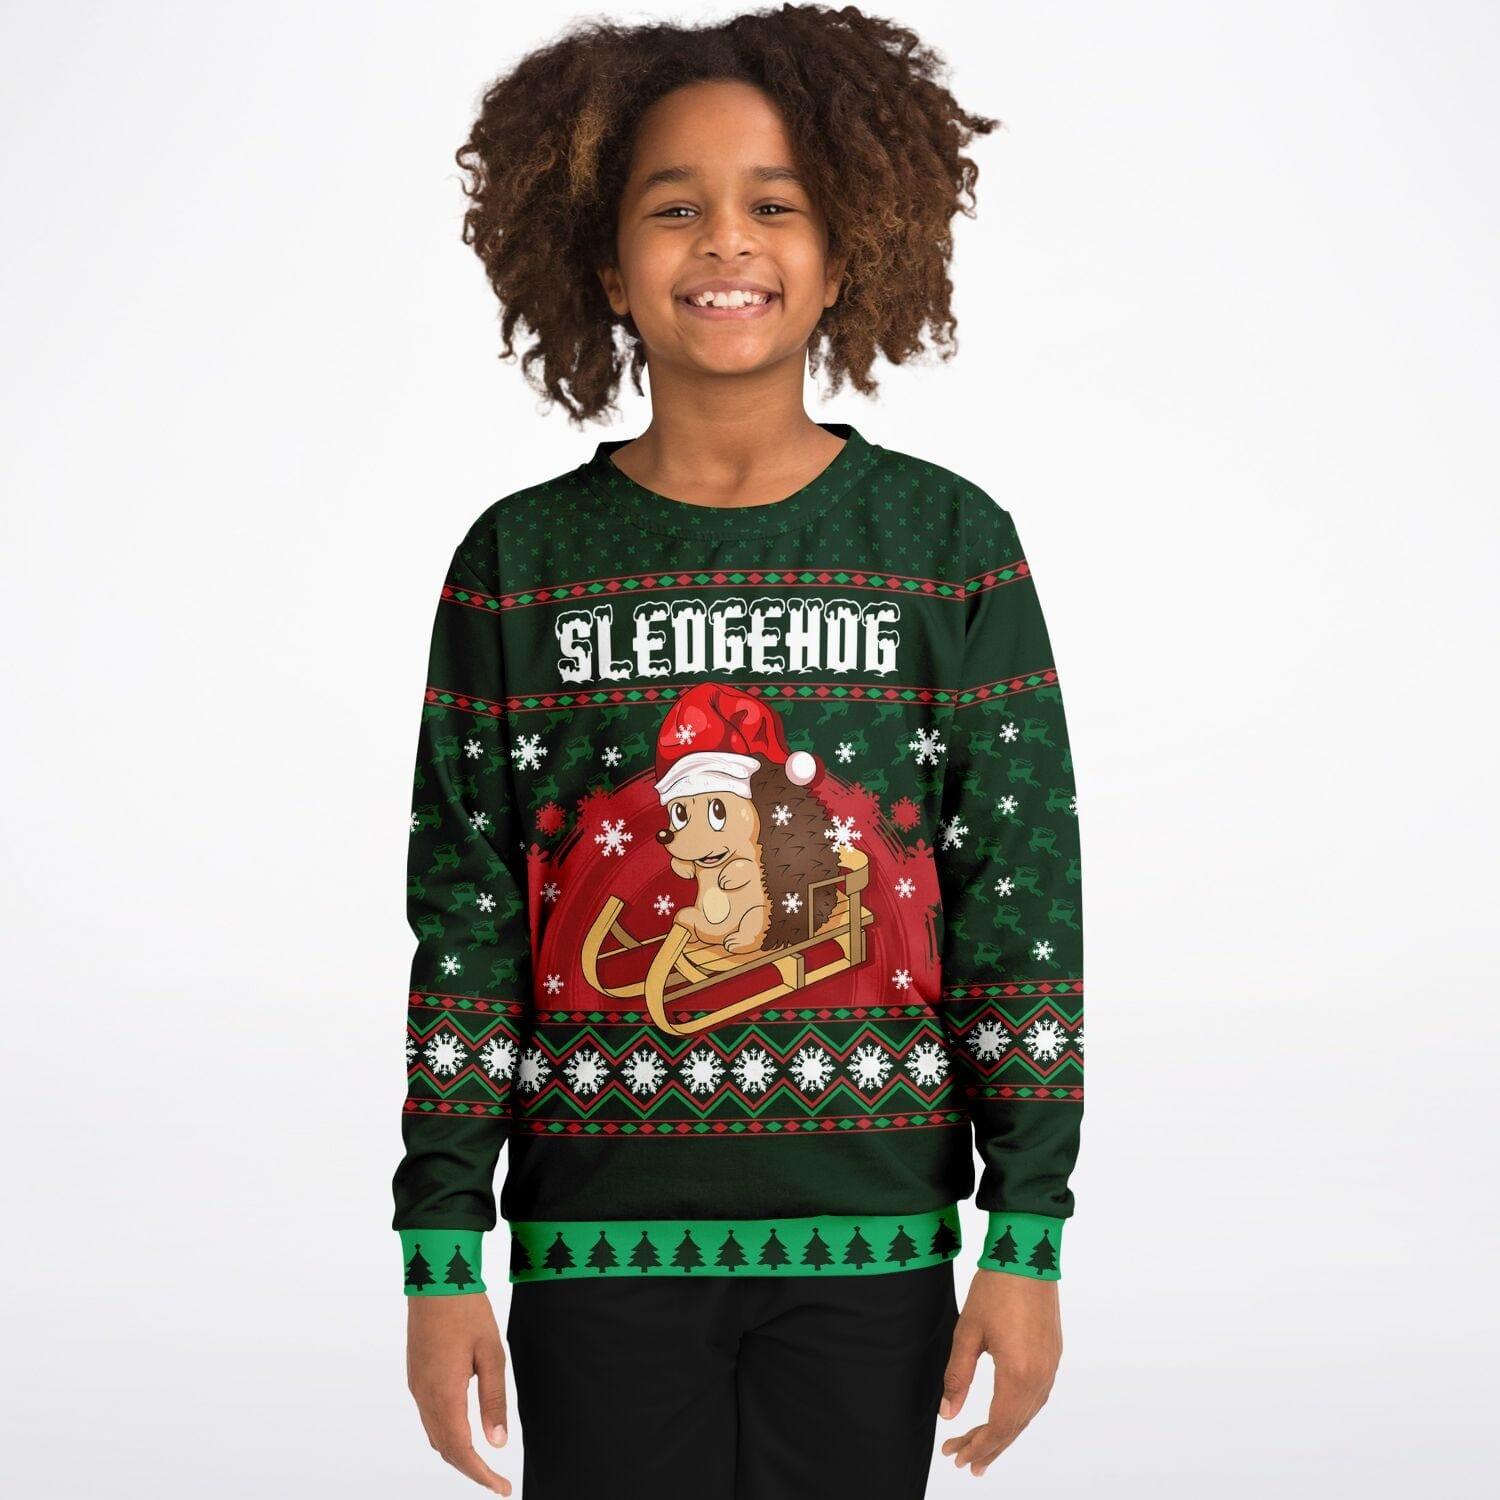 Sledgehog Kids Unisex Ugly Christmas Sweatshirt - TopKoalaTee